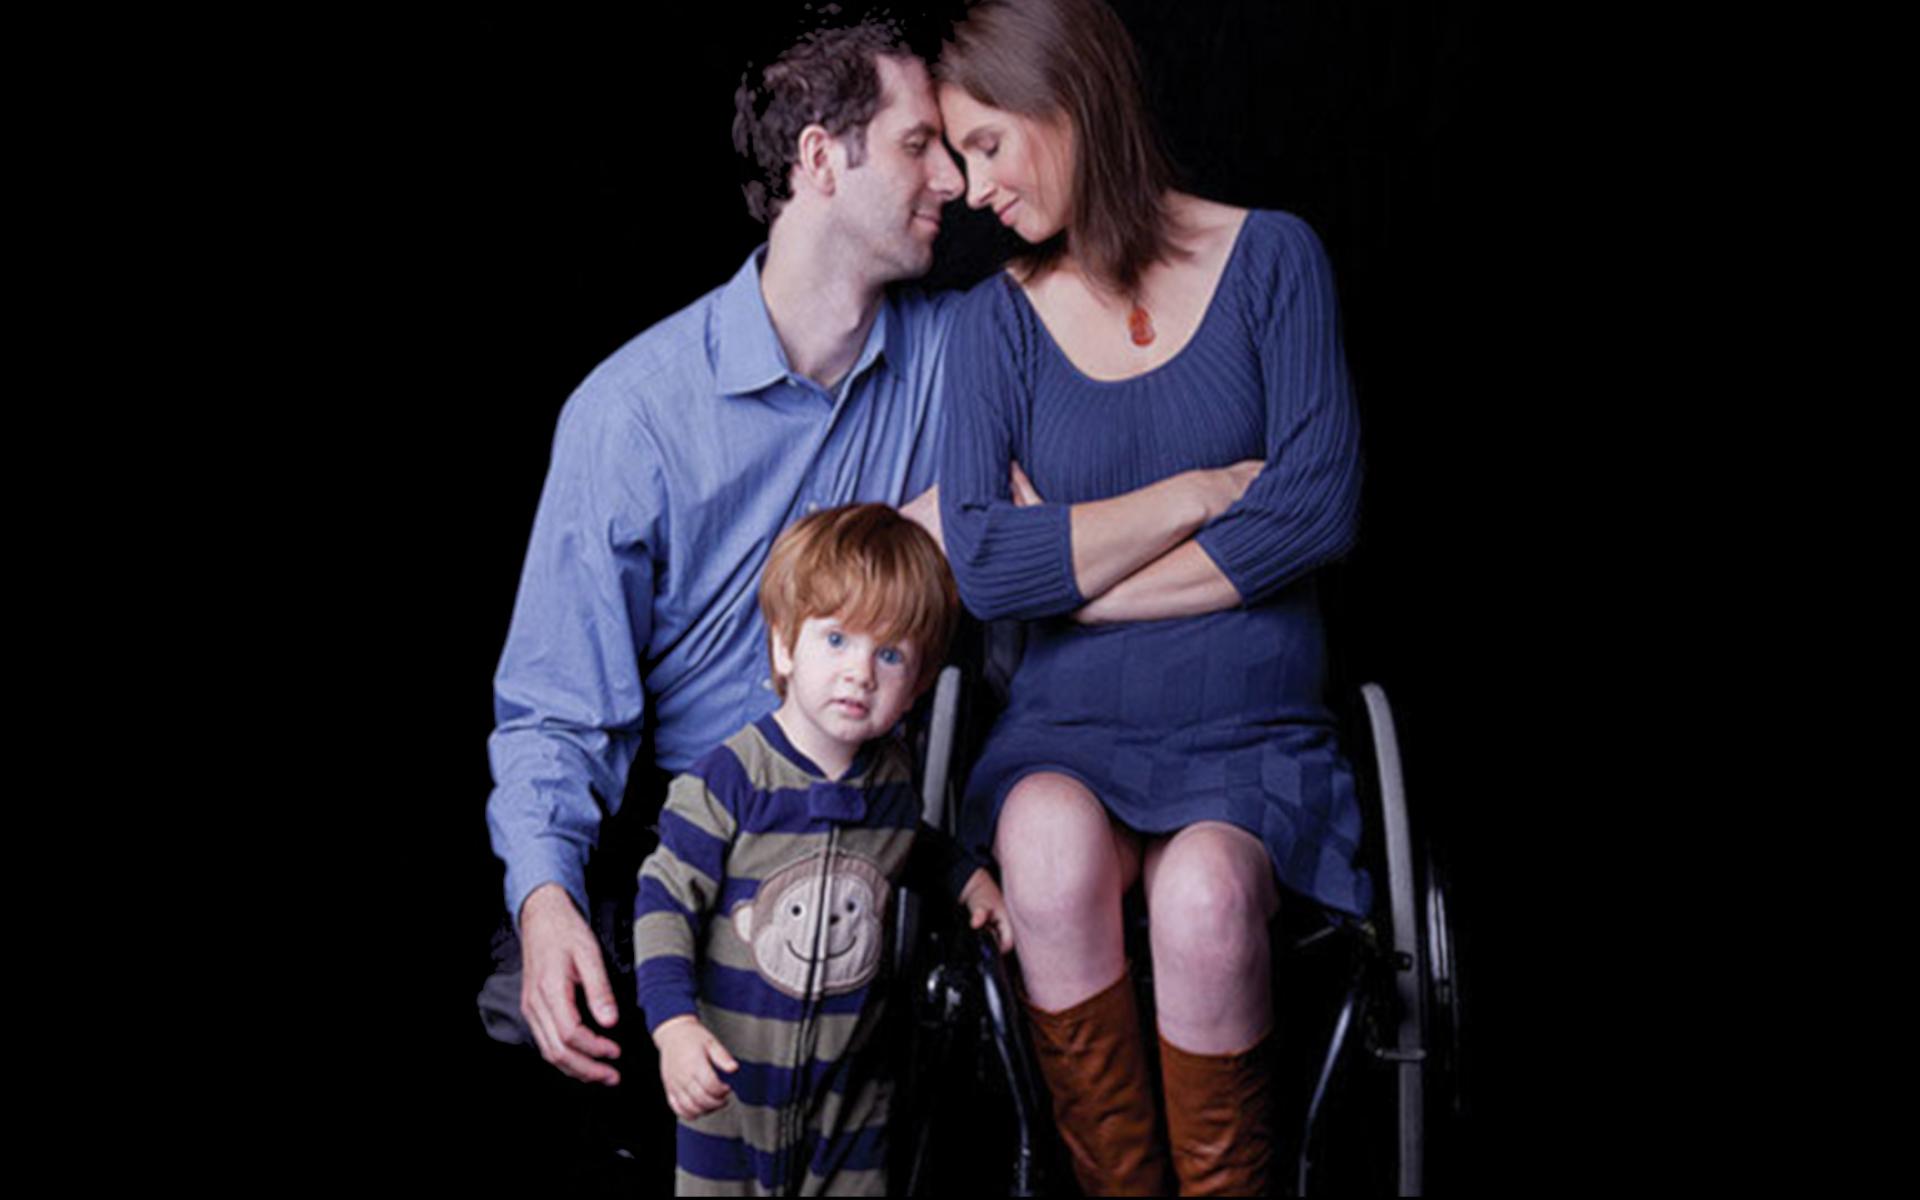 Mutter im Rollstuhl mit ihrer Familie